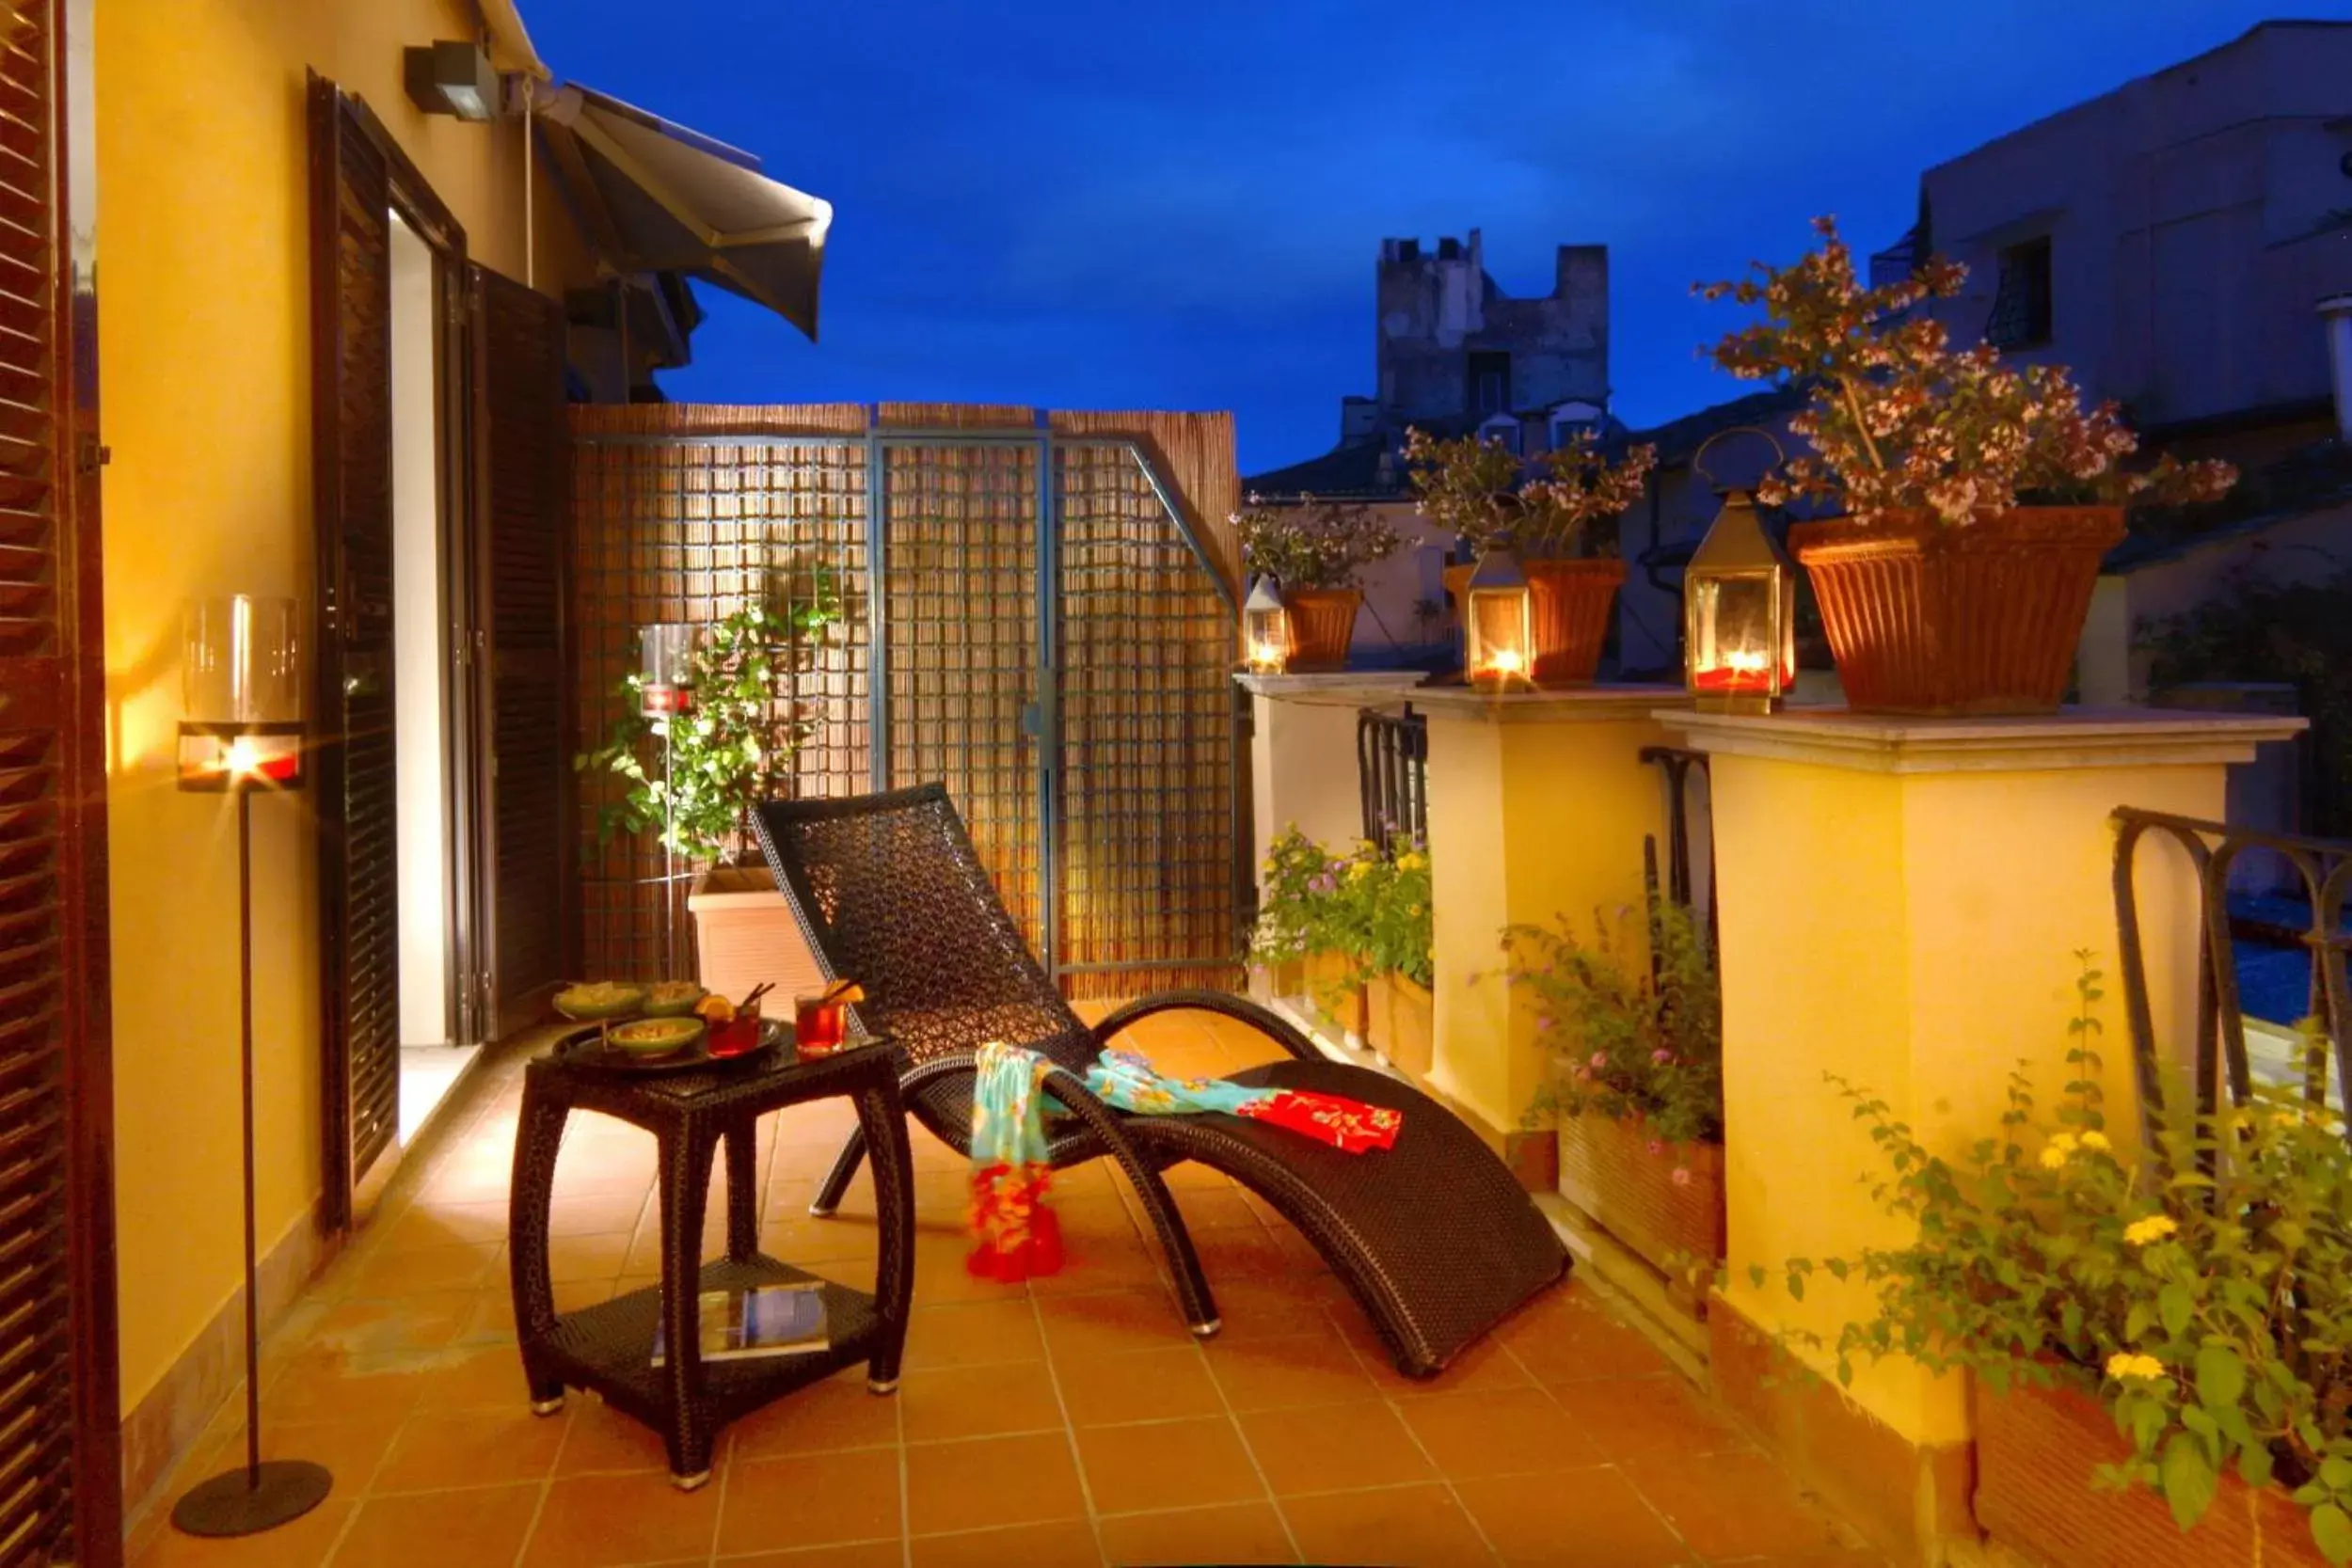 Balcony/Terrace, Patio/Outdoor Area in Hotel Adriano